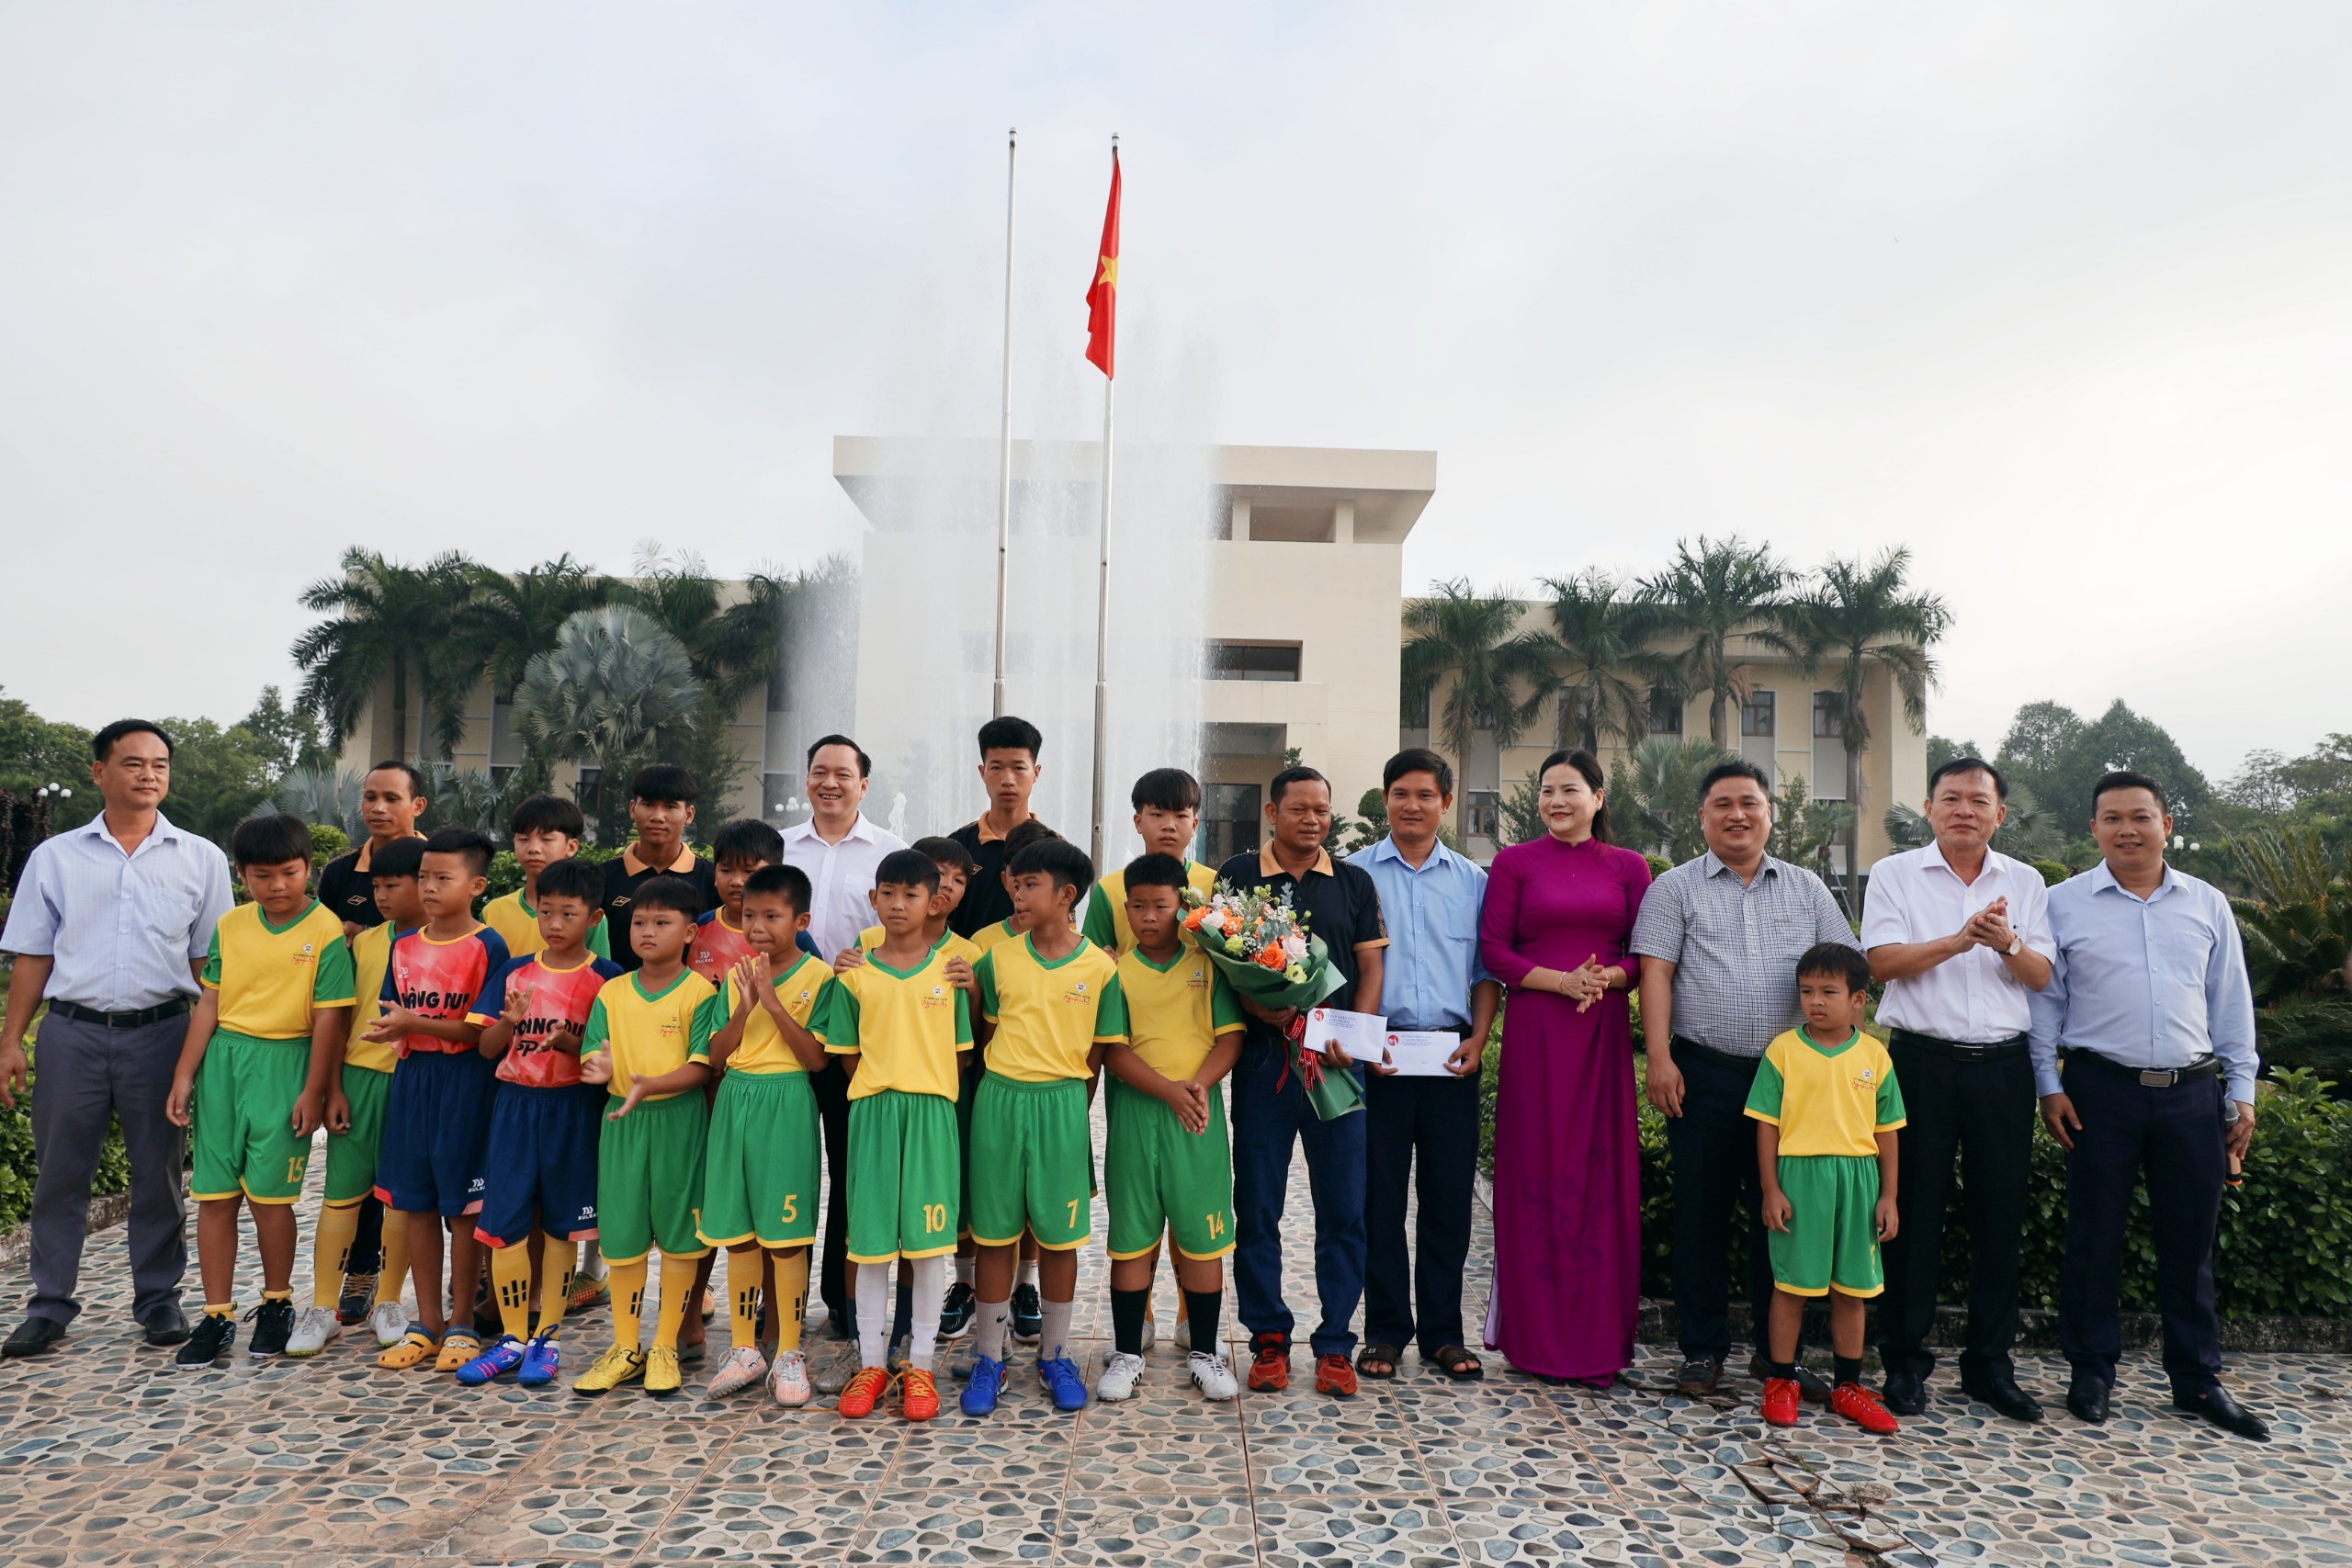 Lãnh đạo huyện Hớn Quản trao thưởng cho đội bóng đá U13 đạt giải nhất U13 tỉnh và đội bơi lội của huyện đạt thành tích cao